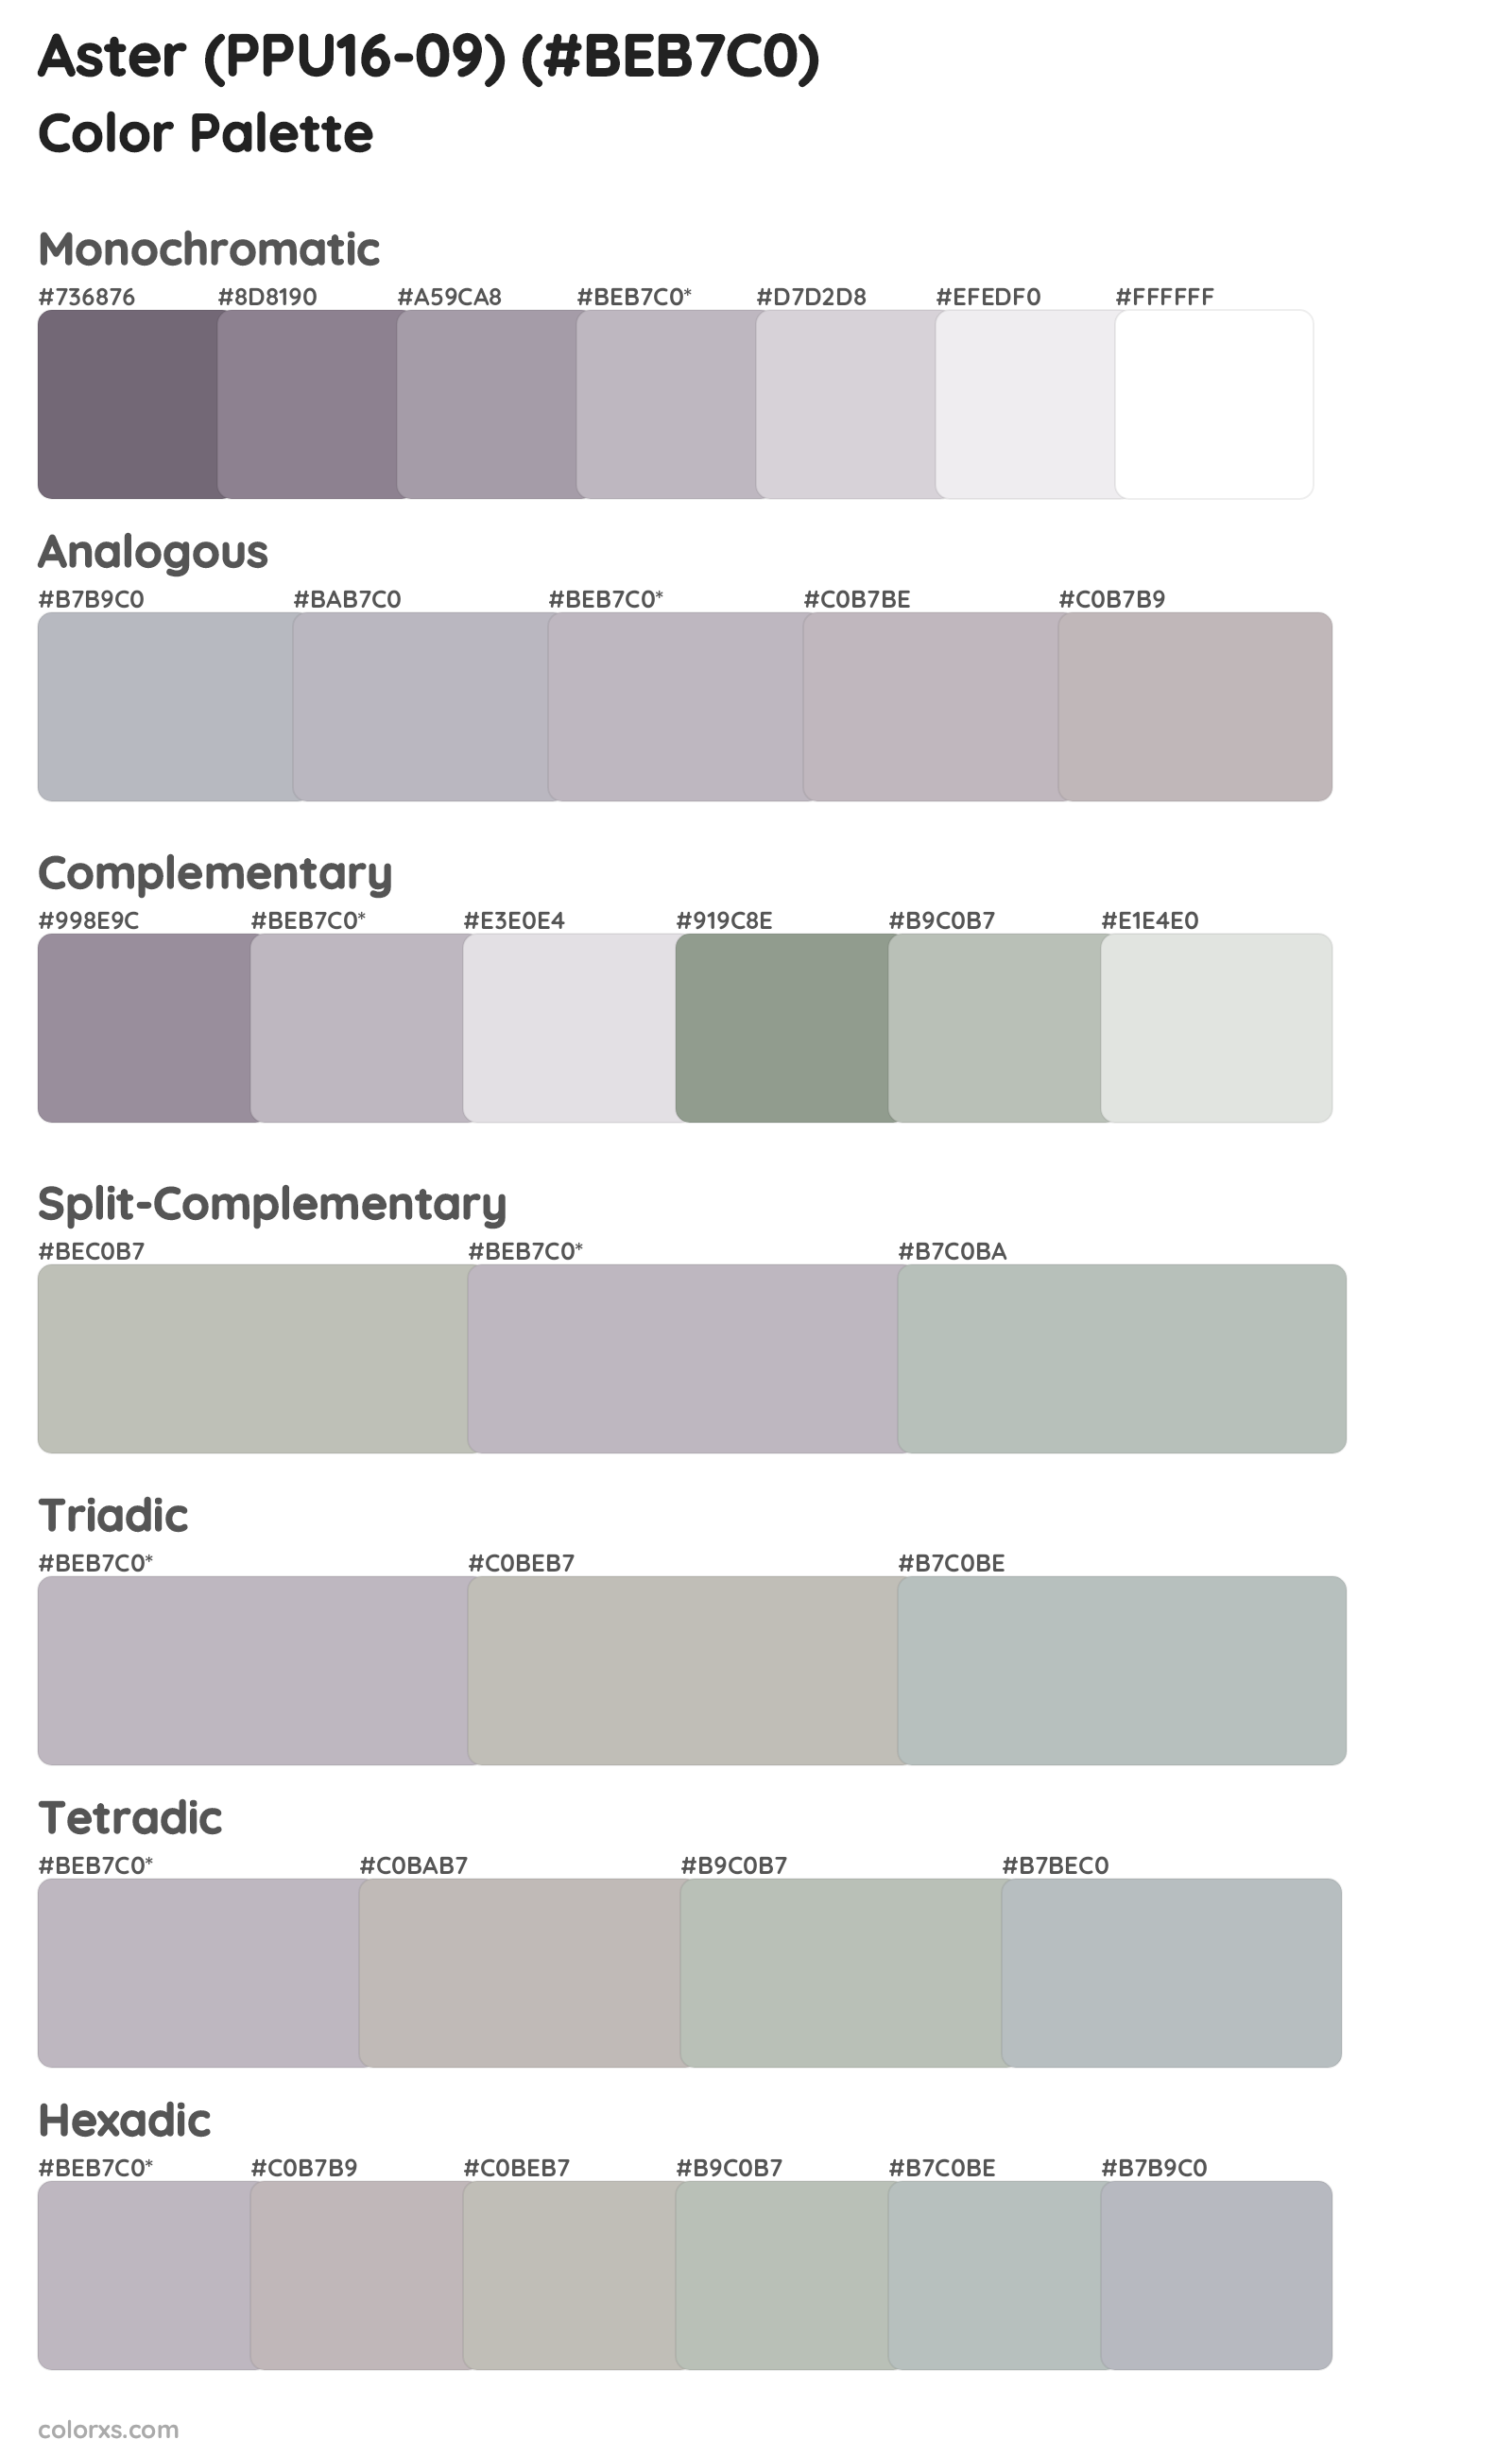 Aster (PPU16-09) Color Scheme Palettes